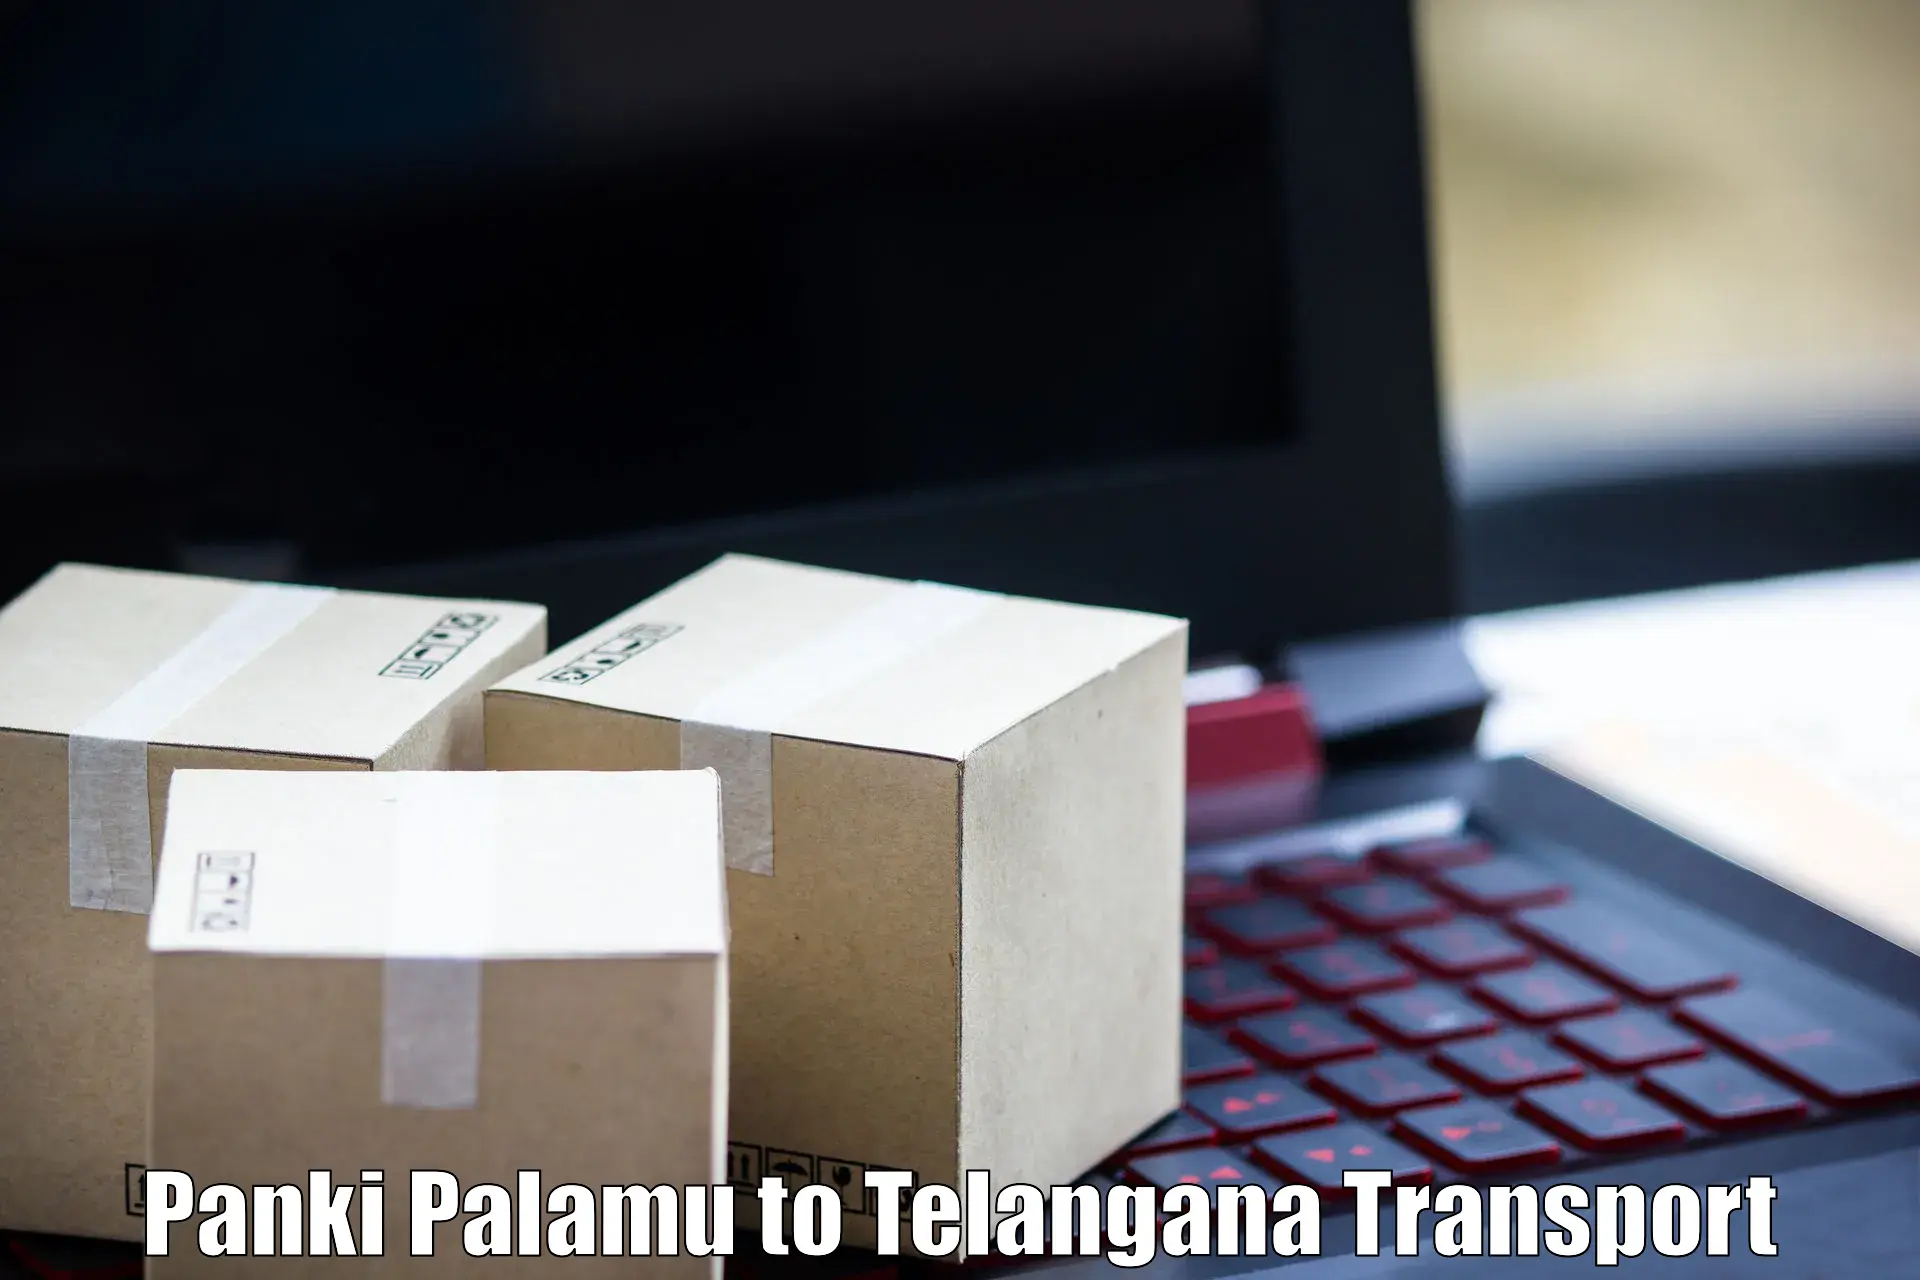 Nationwide transport services Panki Palamu to Gollapalli